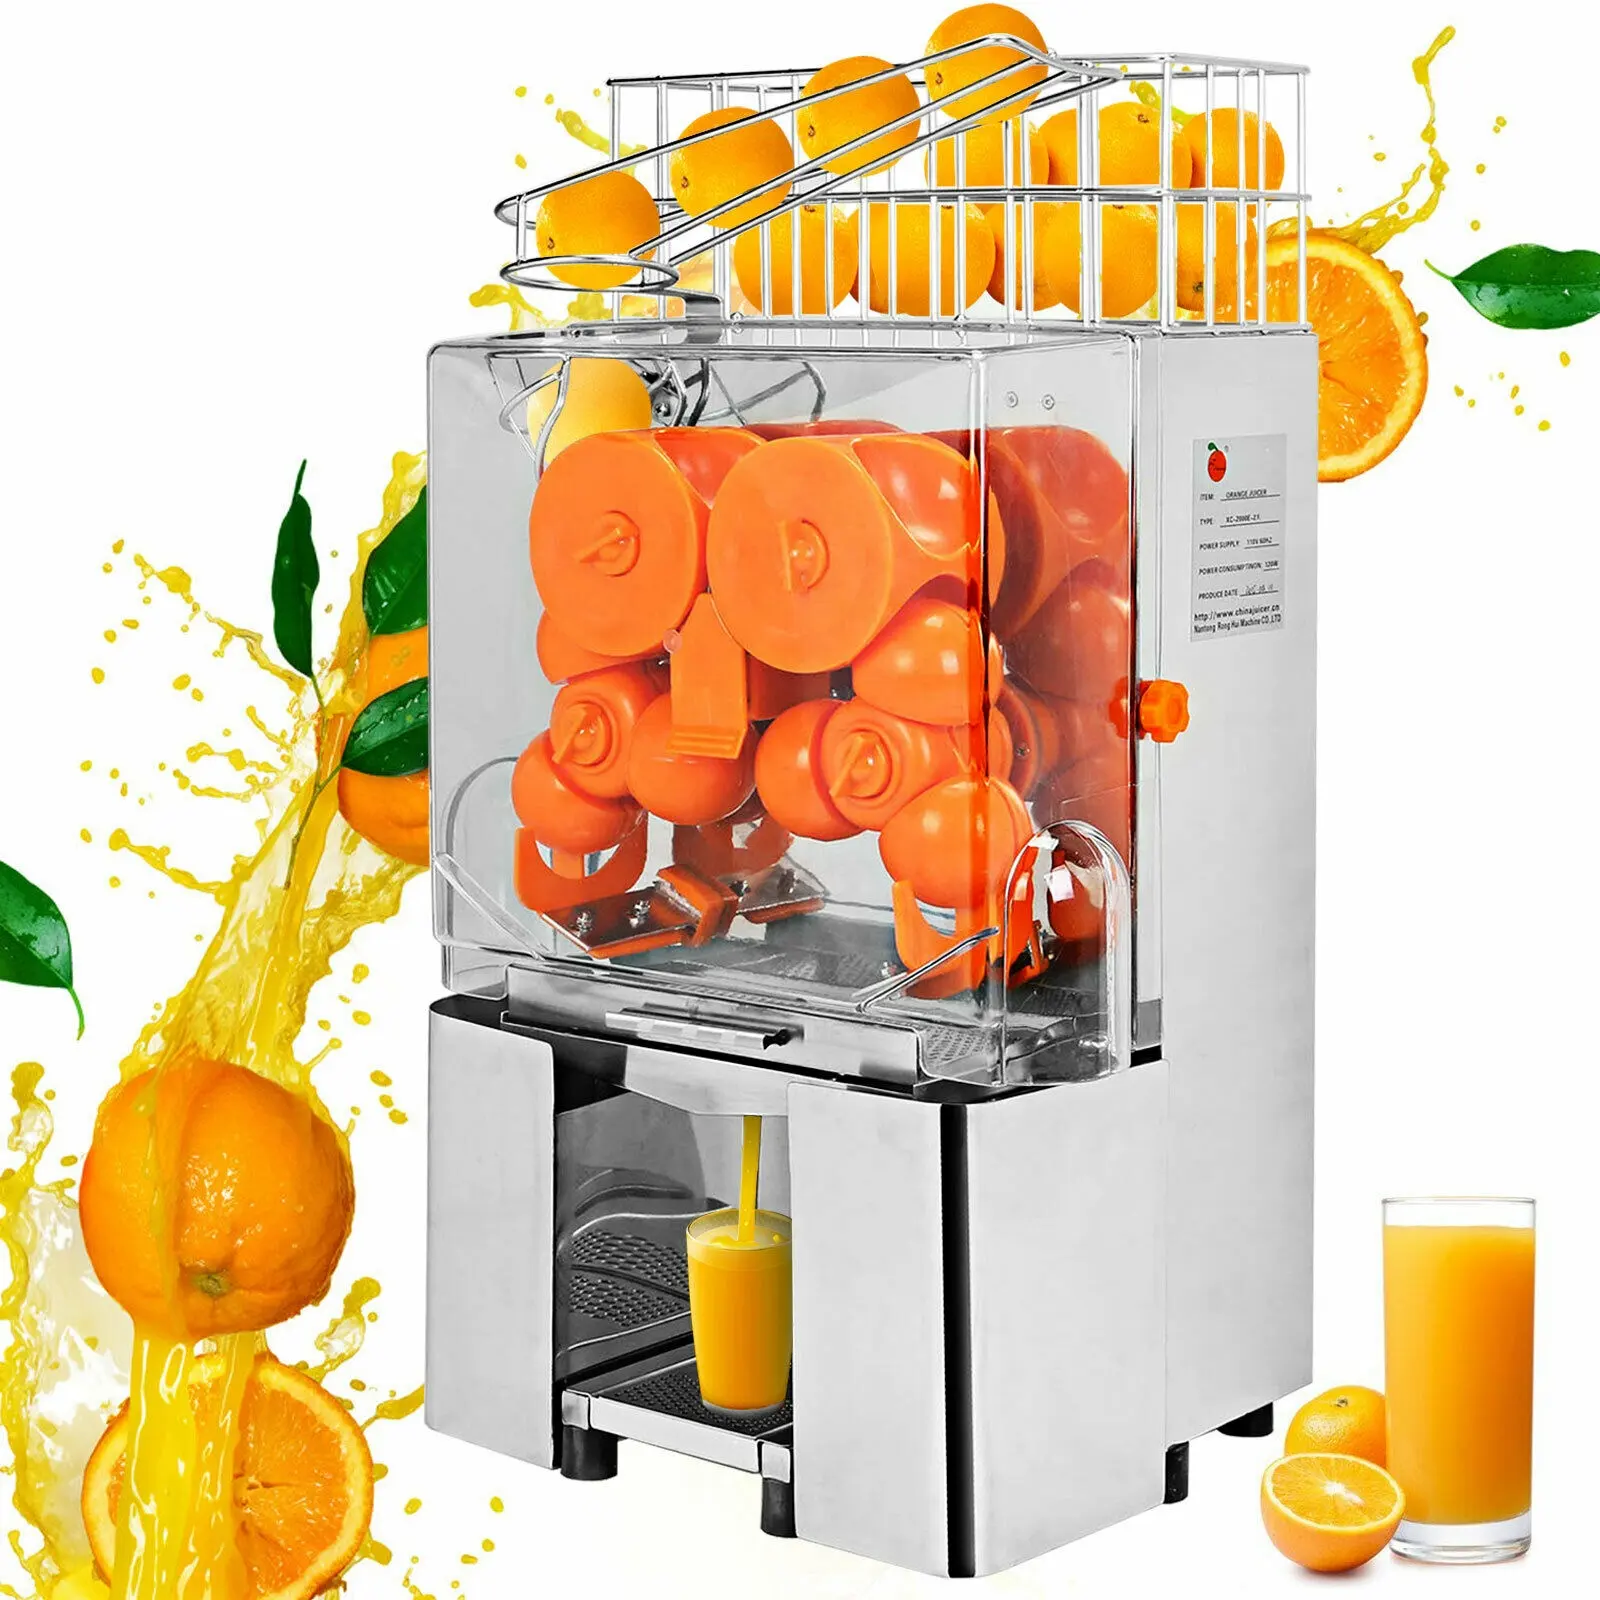 Meyve çıkarma makinası, otomatik endüstriyel portakal sıkma makinesi sıkacağı 22-25 portakal/dakika